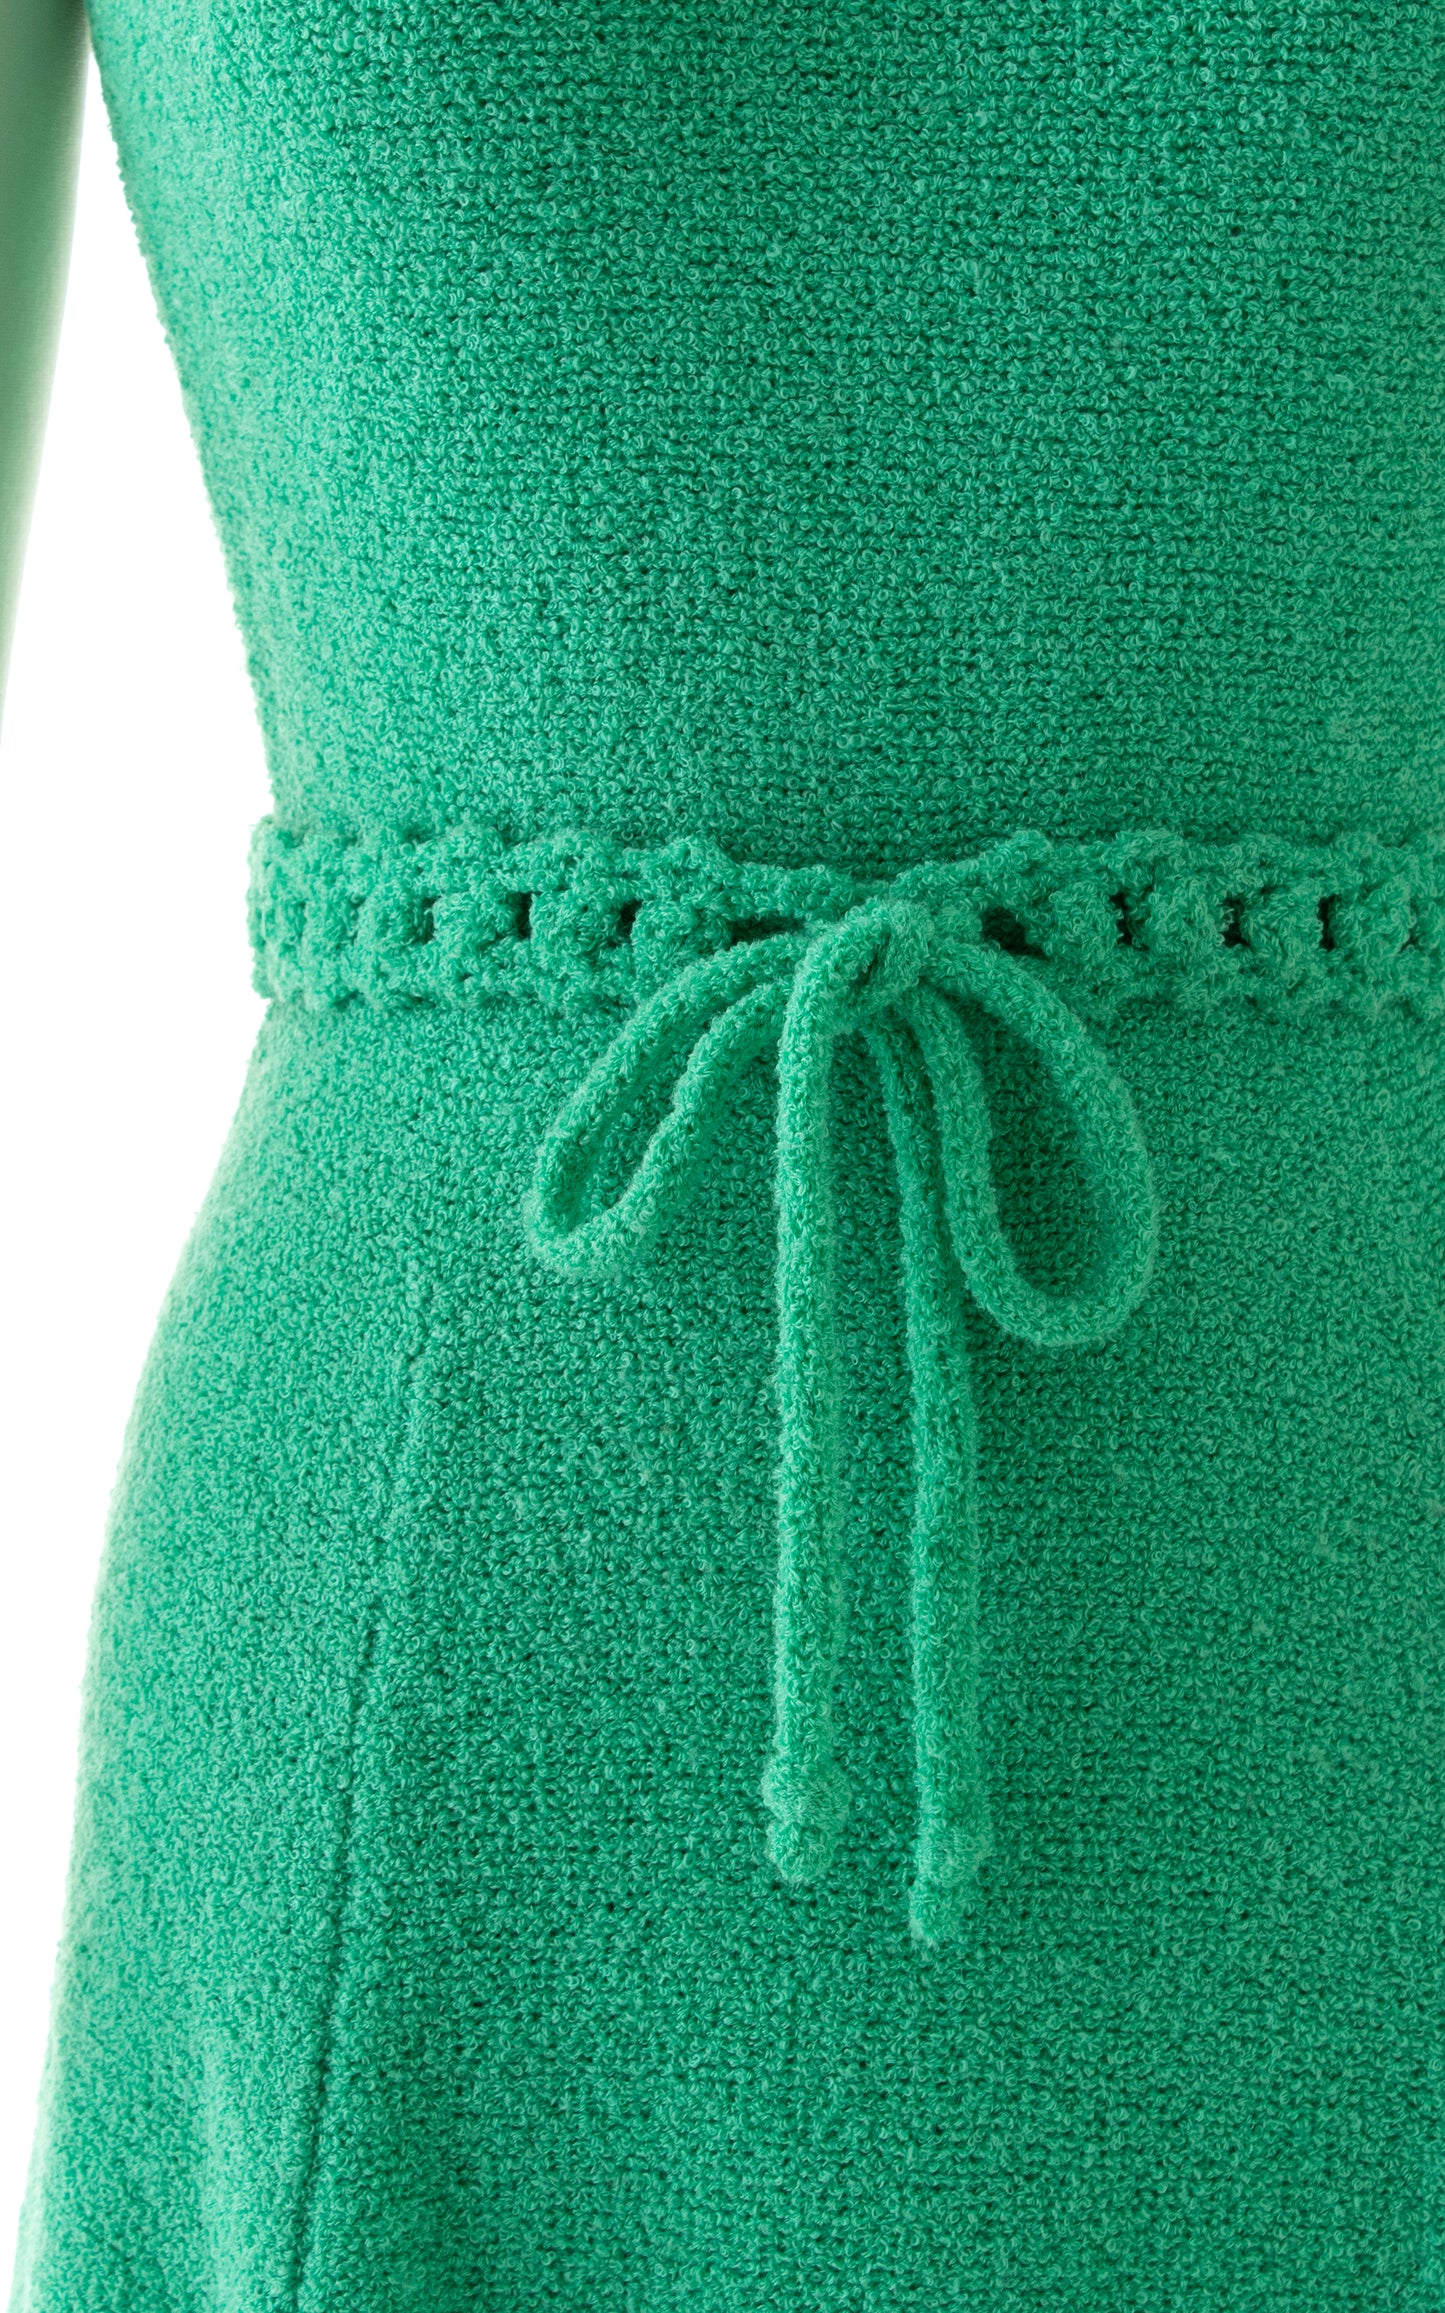 1960s ST JOHN KNITS Sweater Dress | small/medium